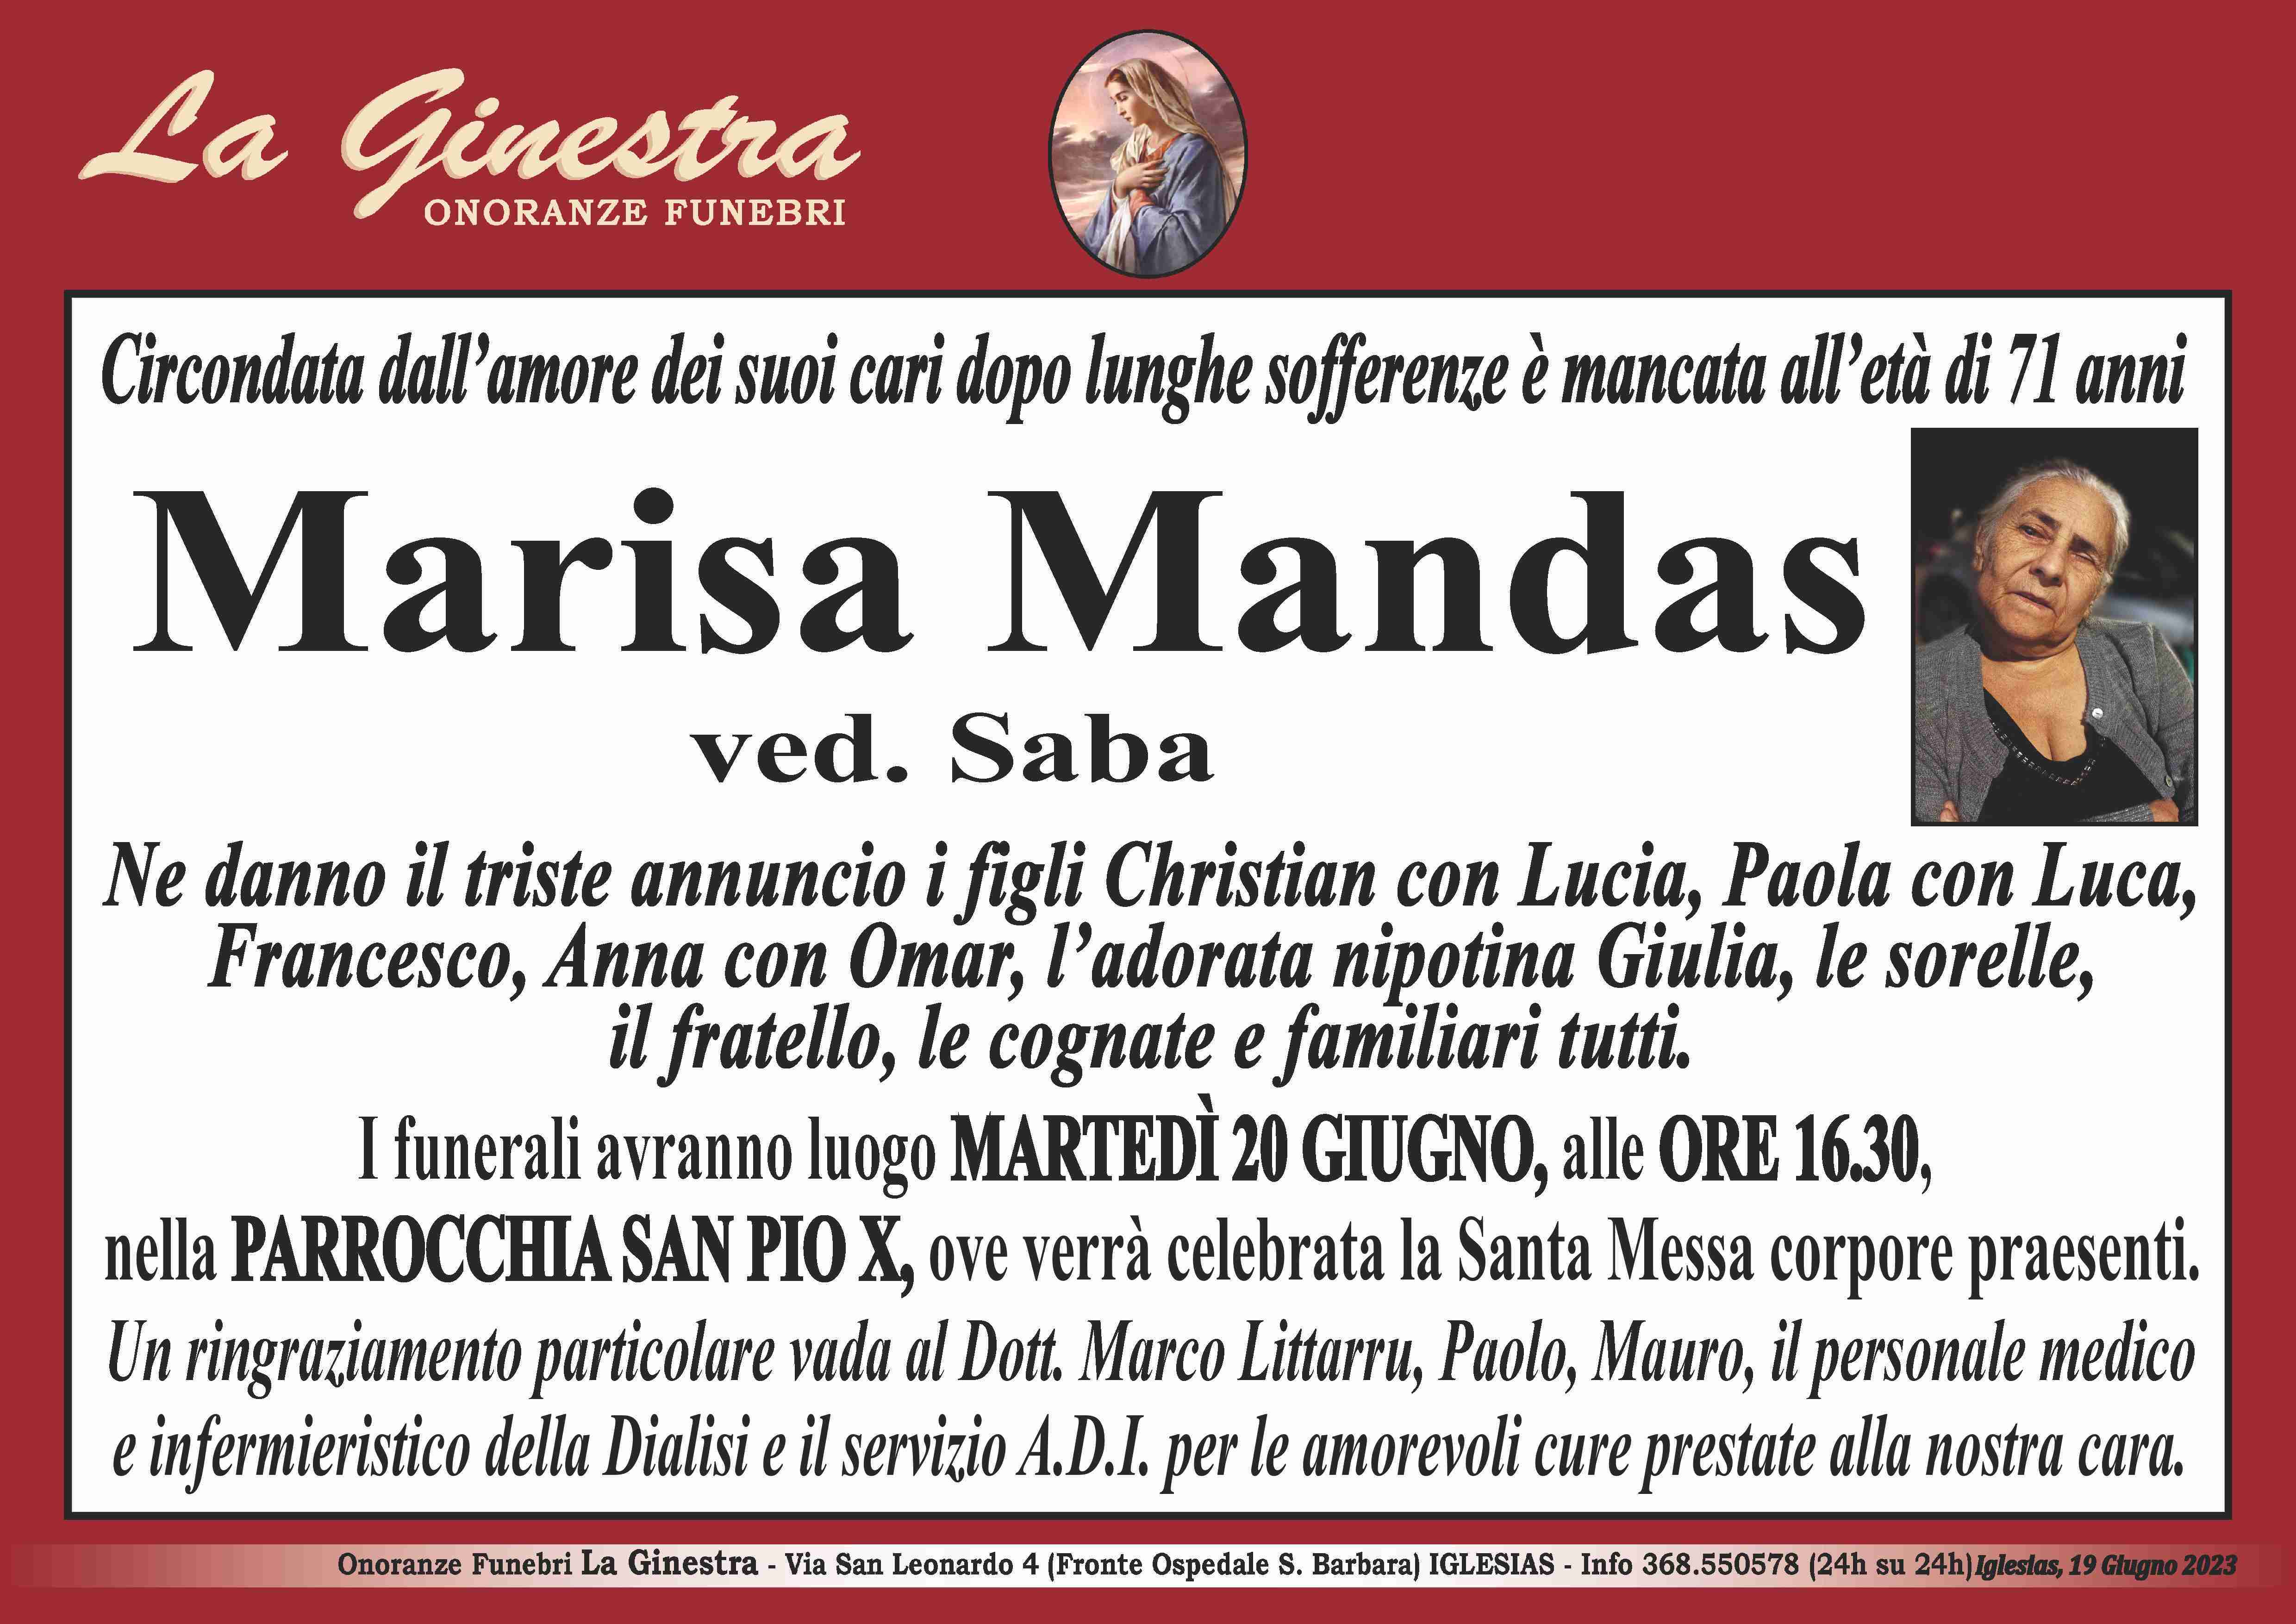 Marisa Mandas